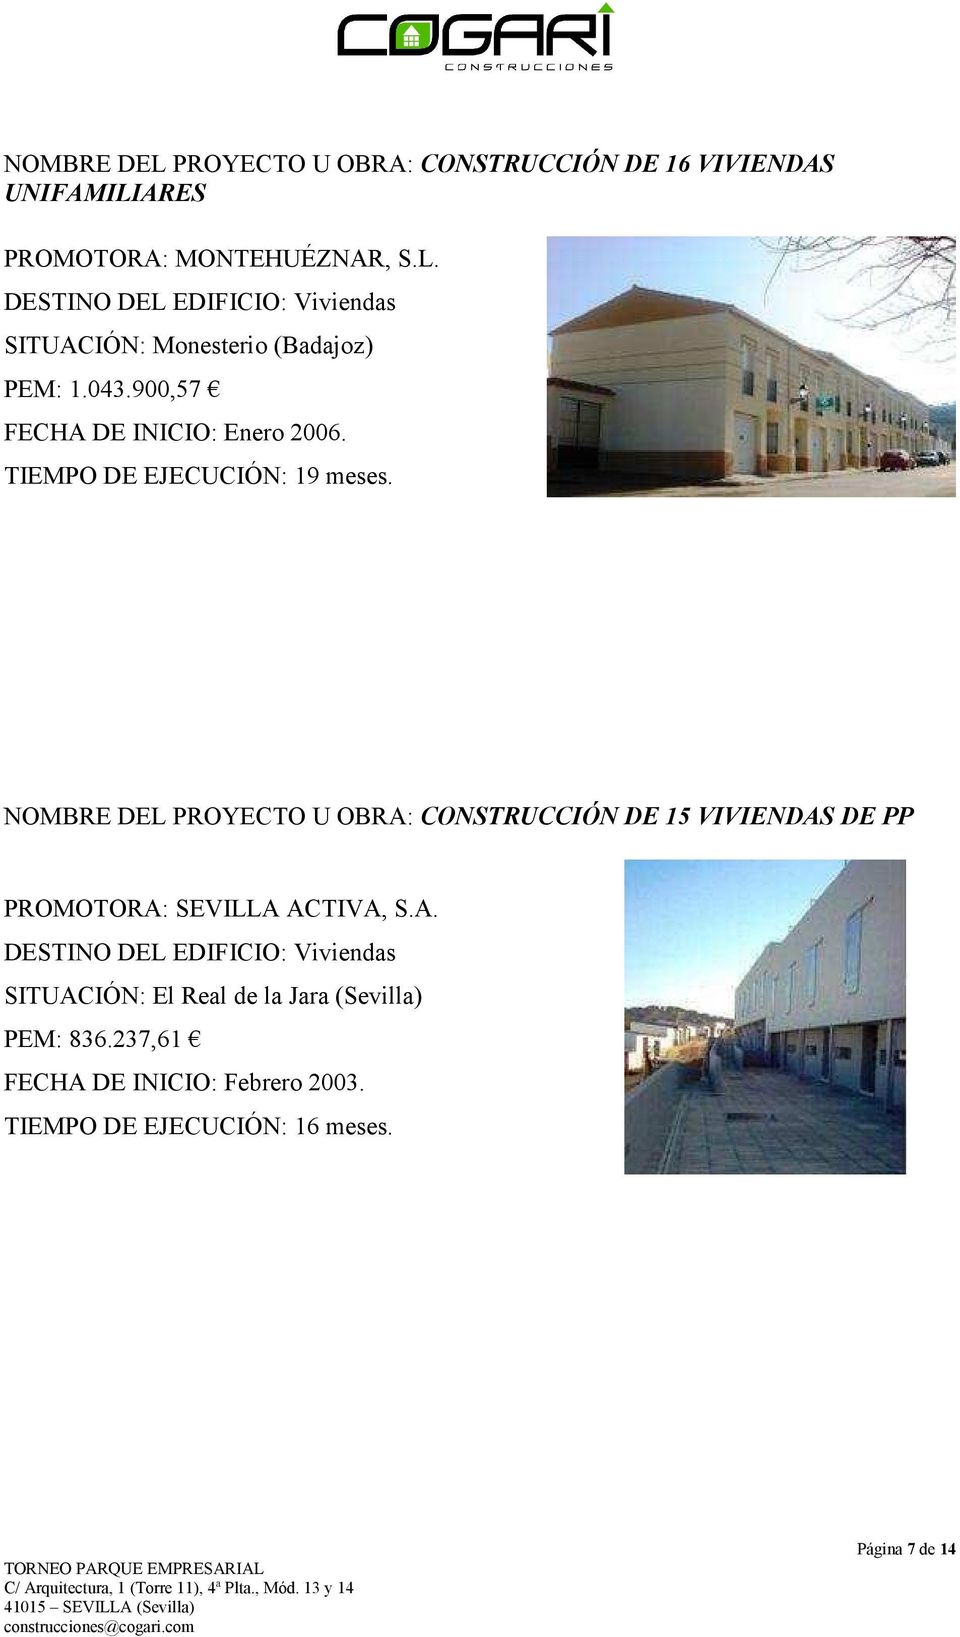 NOMBRE DEL PROYECTO U OBRA: CONSTRUCCIÓN DE 15 VIVIENDAS DE PP PROMOTORA: SEVILLA ACTIVA, S.A. DESTINO DEL EDIFICIO: Viviendas SITUACIÓN: El Real de la Jara (Sevilla) PEM: 836.